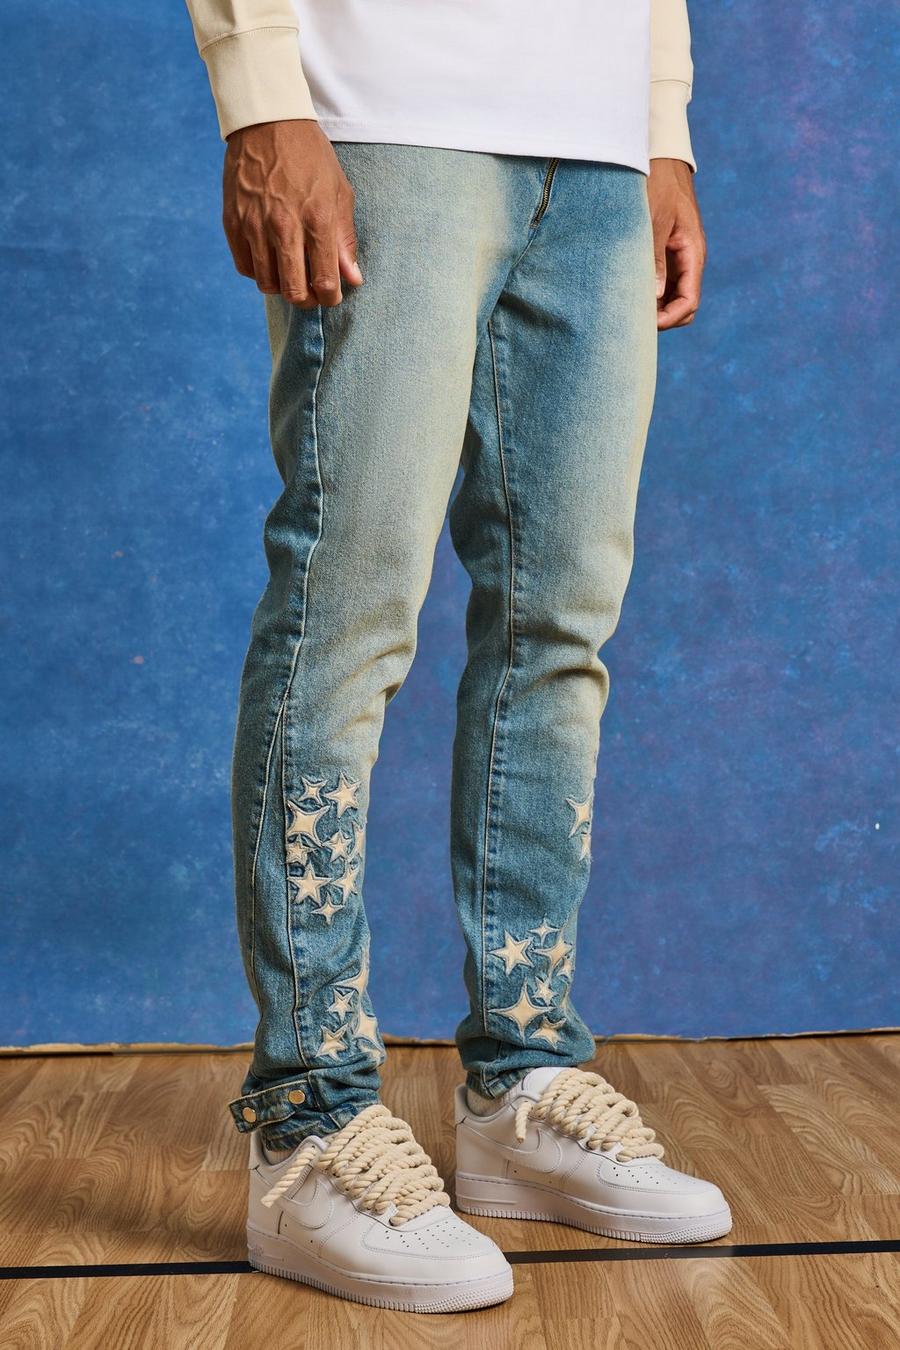 Jeans Tall Slim Fit in PU rigido con applique e inserti, Antique wash